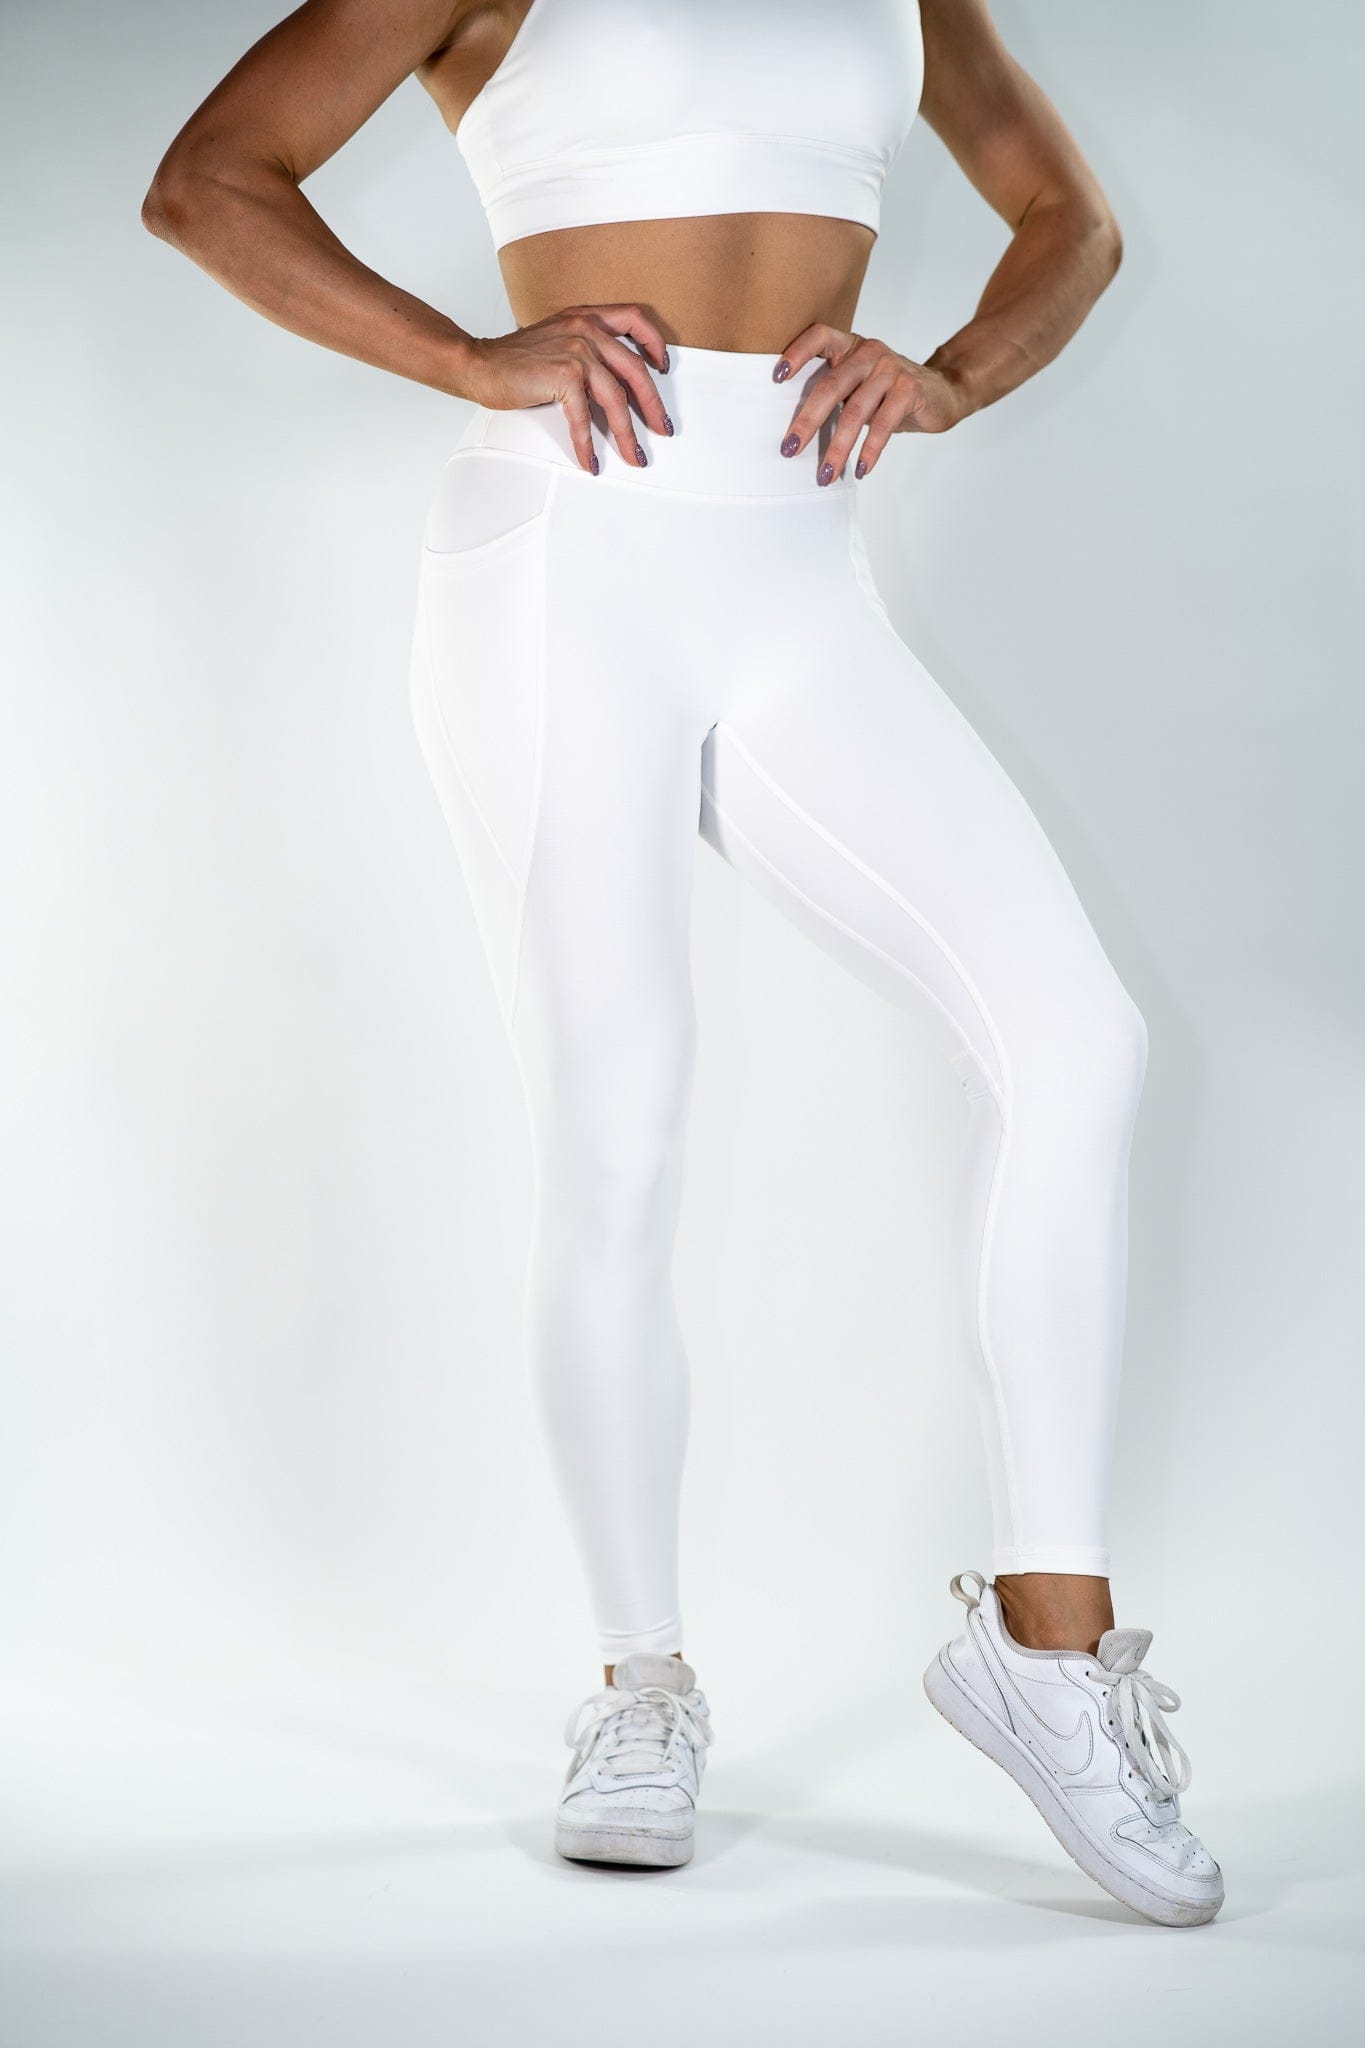 WHITE Workout leggings - XS - VivienVance